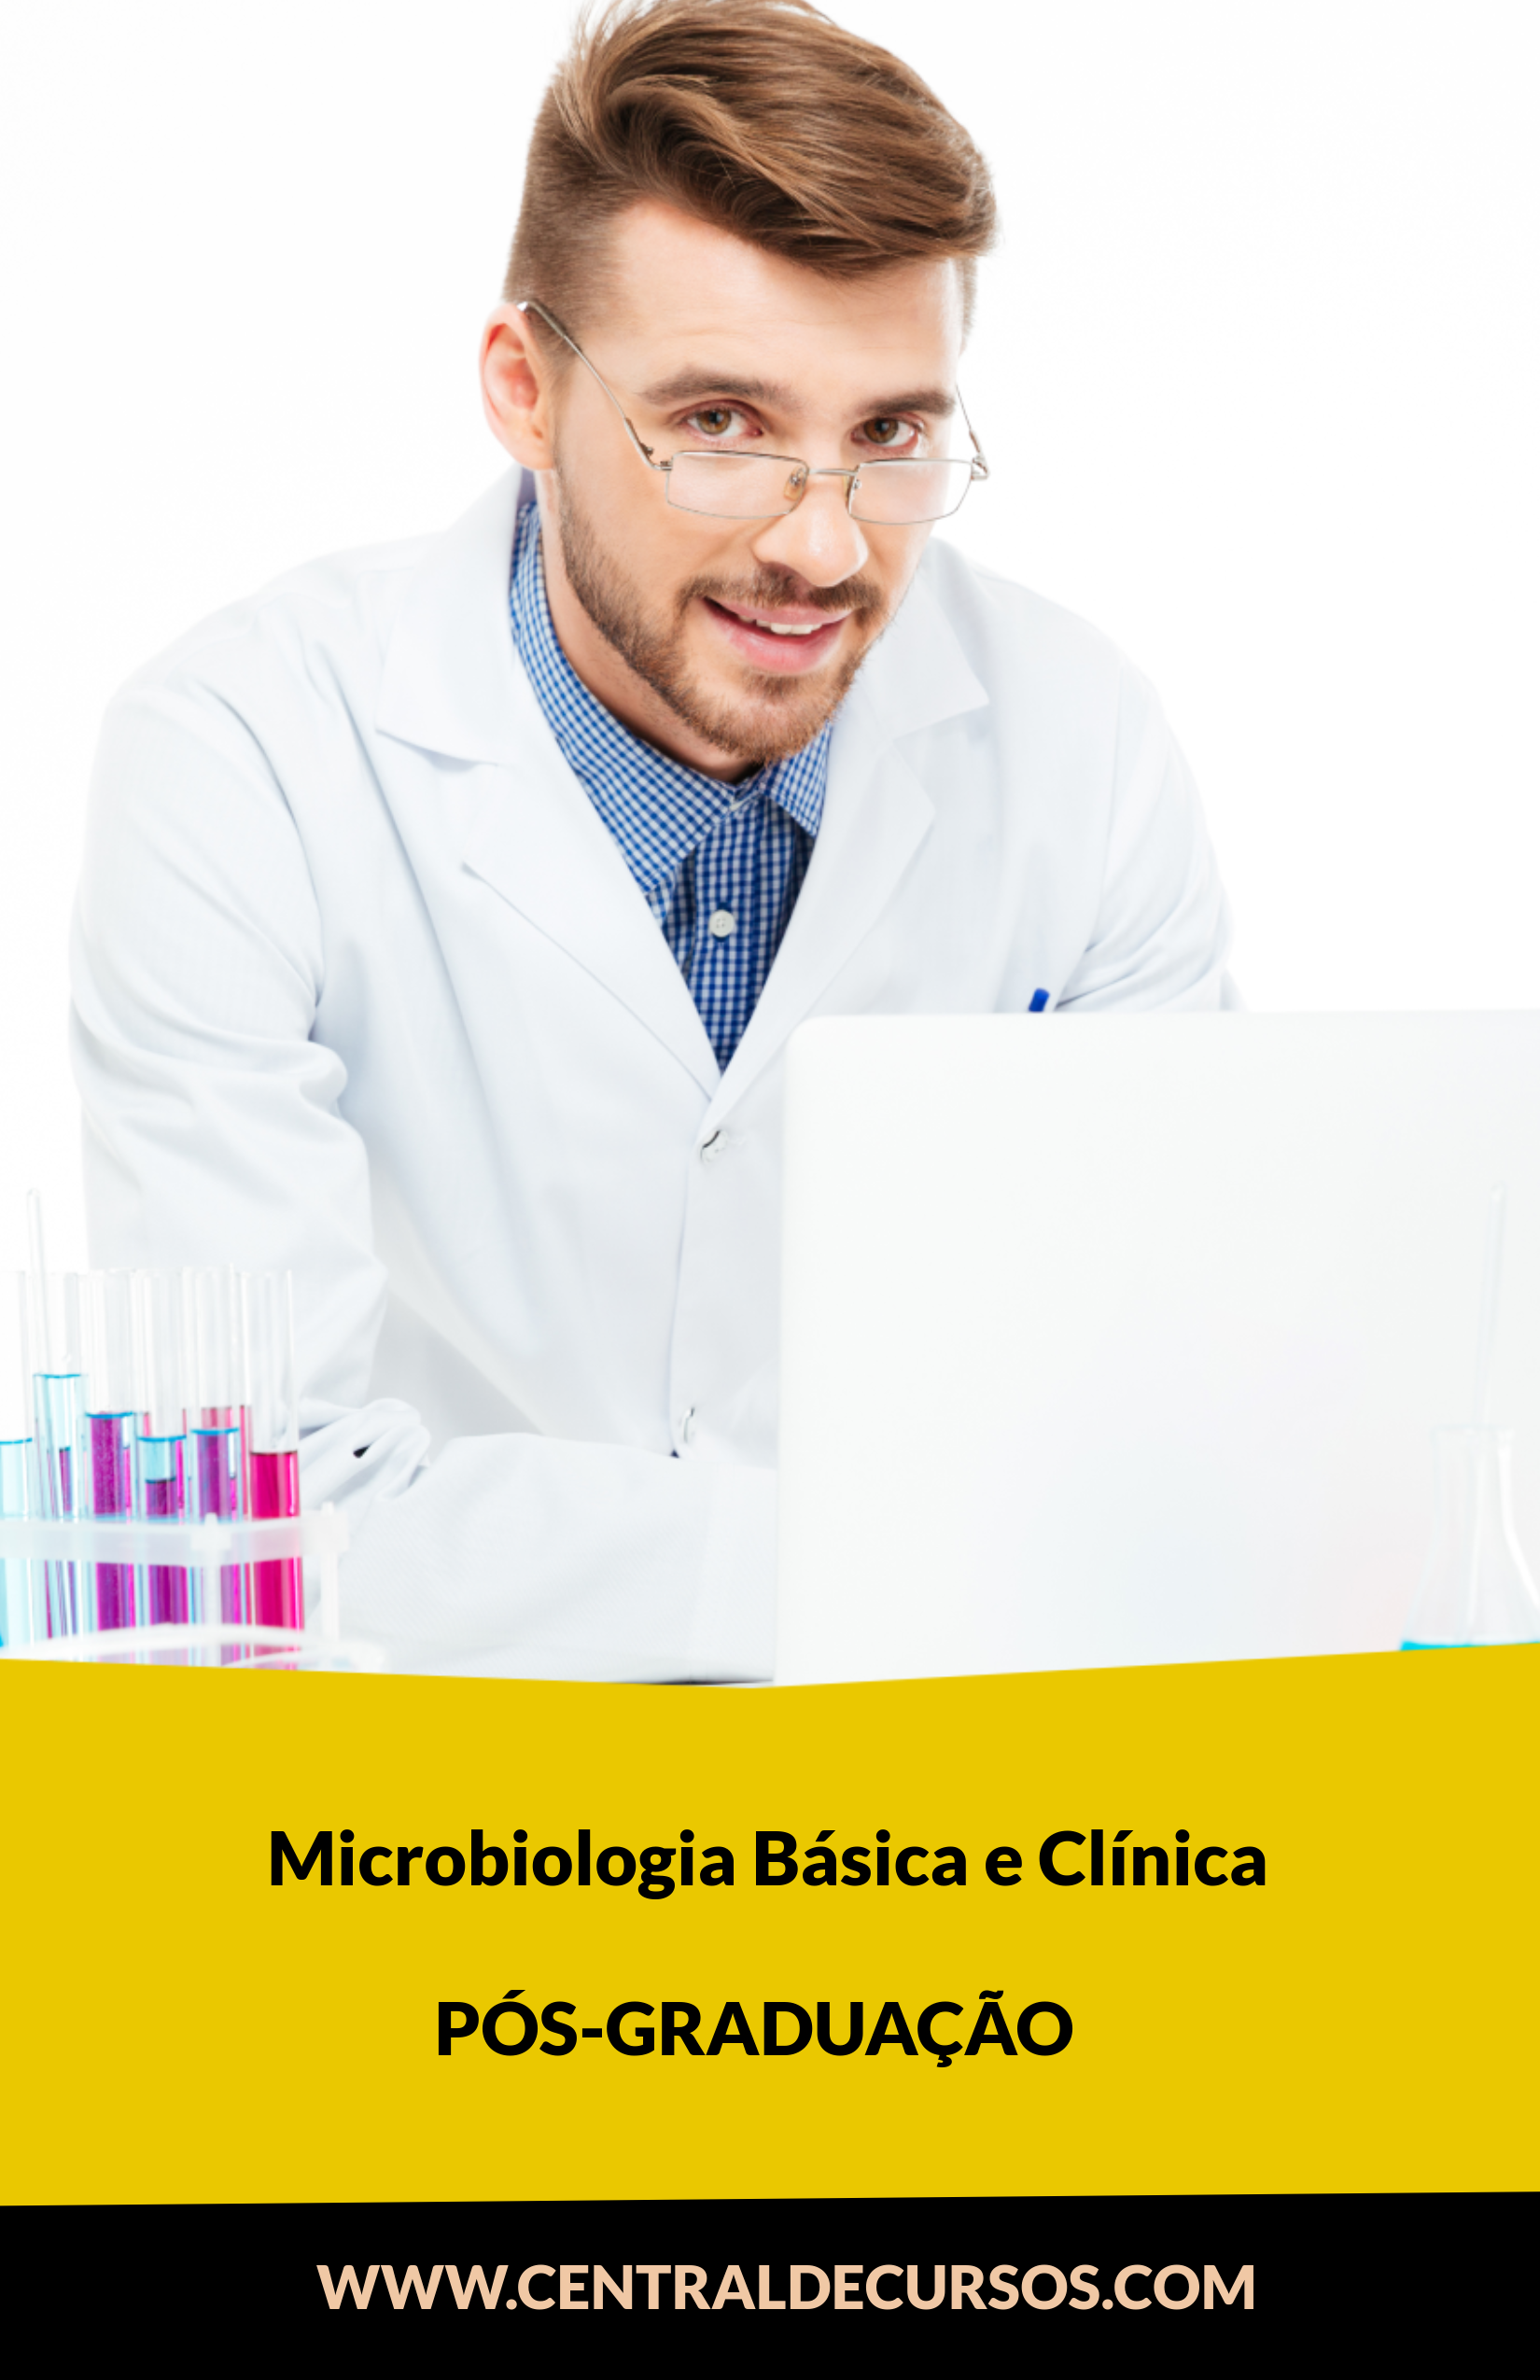  Microbiologia Básica E Clínica